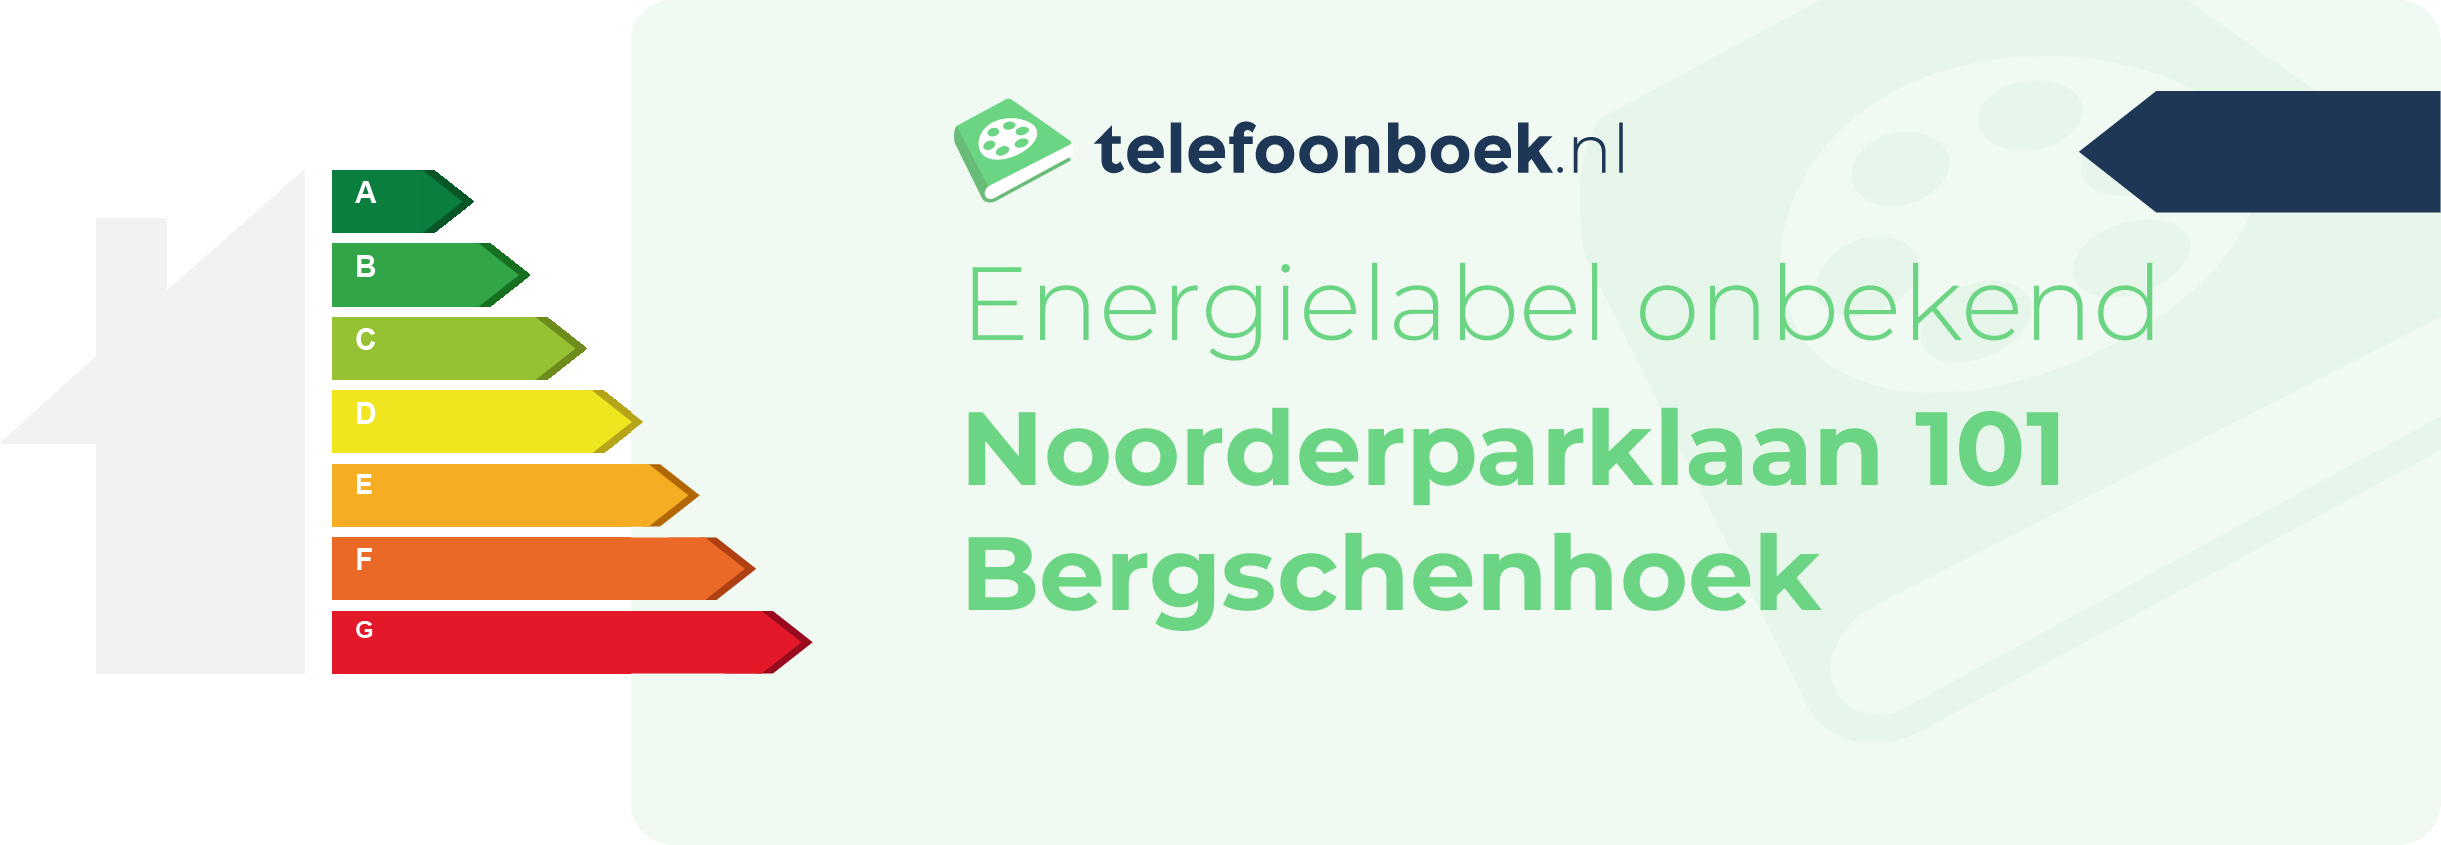 Energielabel Noorderparklaan 101 Bergschenhoek